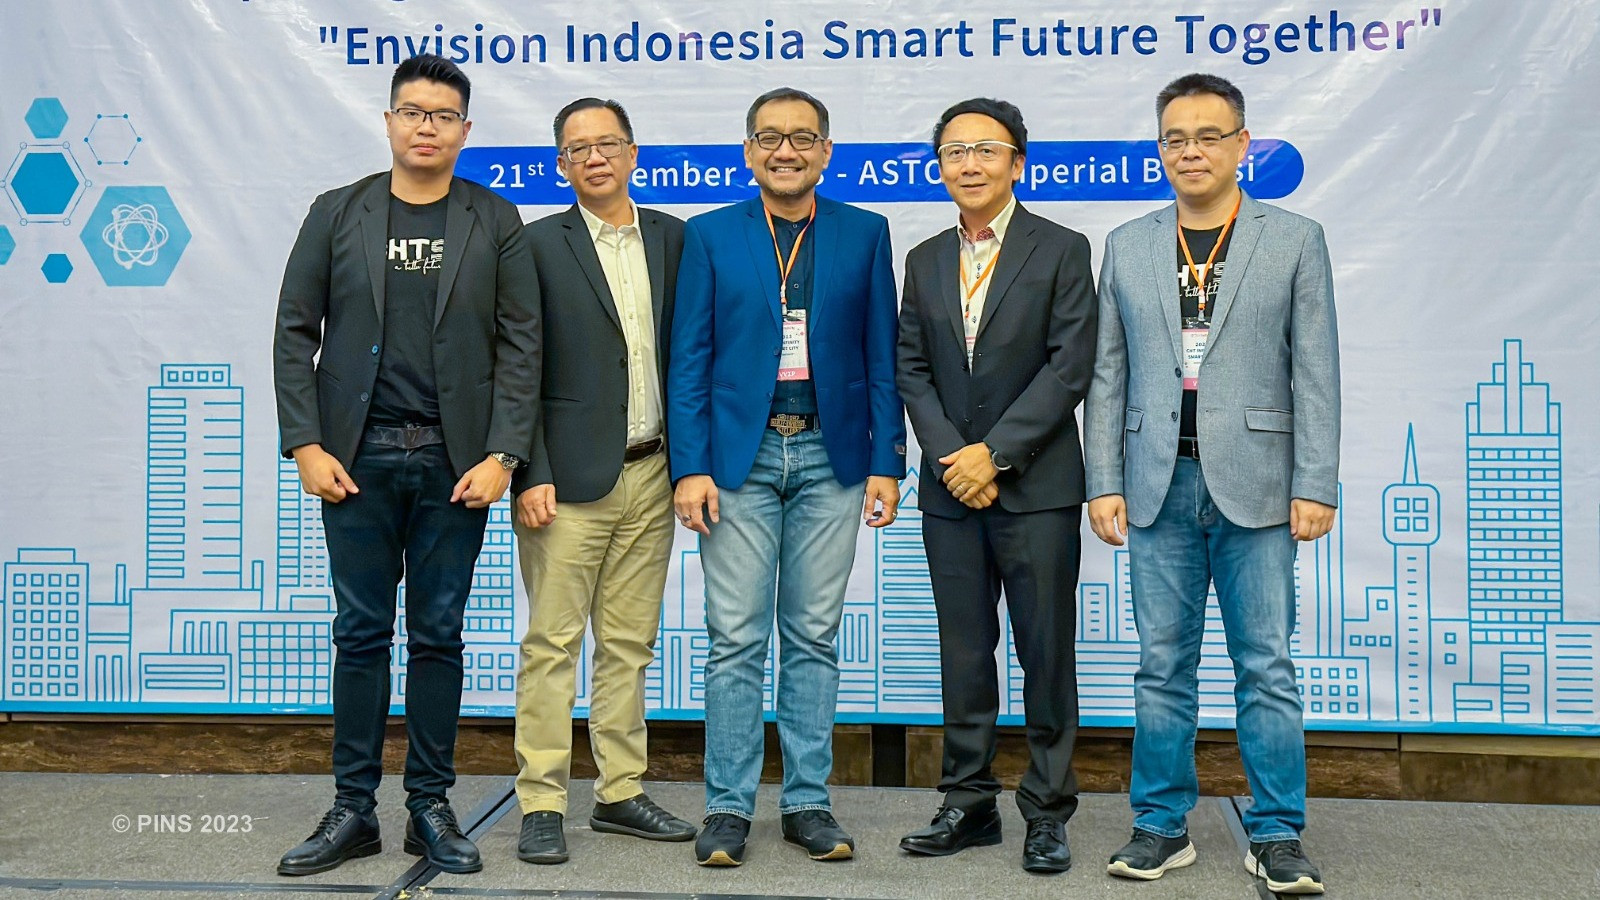 Kerja Sama PINS dengan CHT INFINITY Group Tawarkan Solusi Smart City bagi Ibu Kota Negara Nusantara